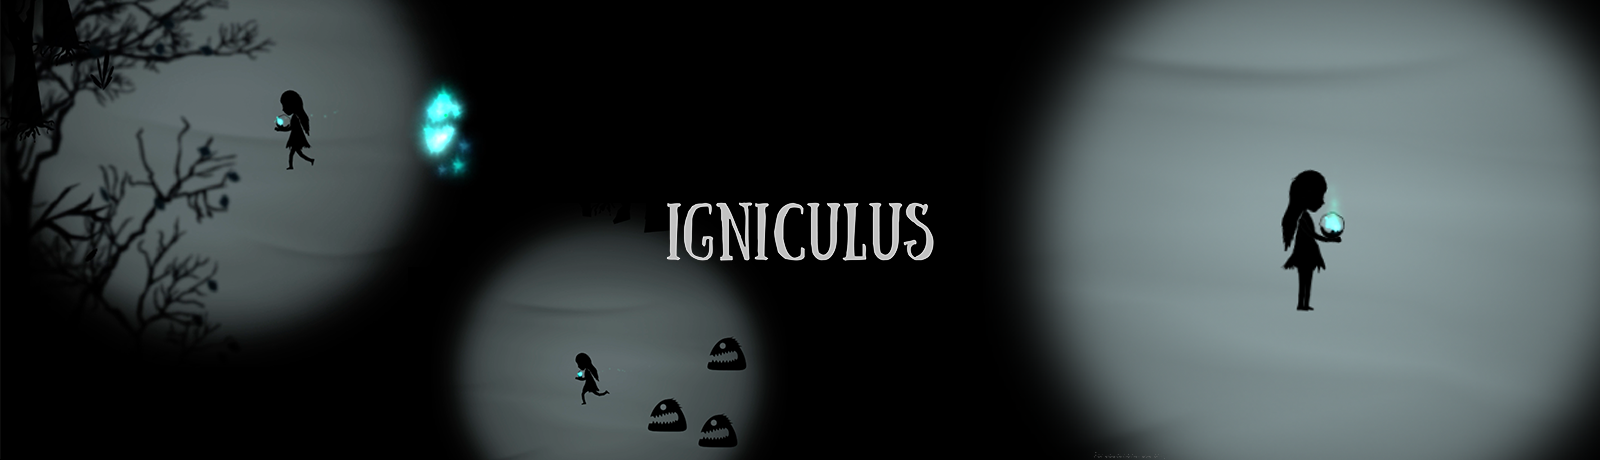 Igniculus